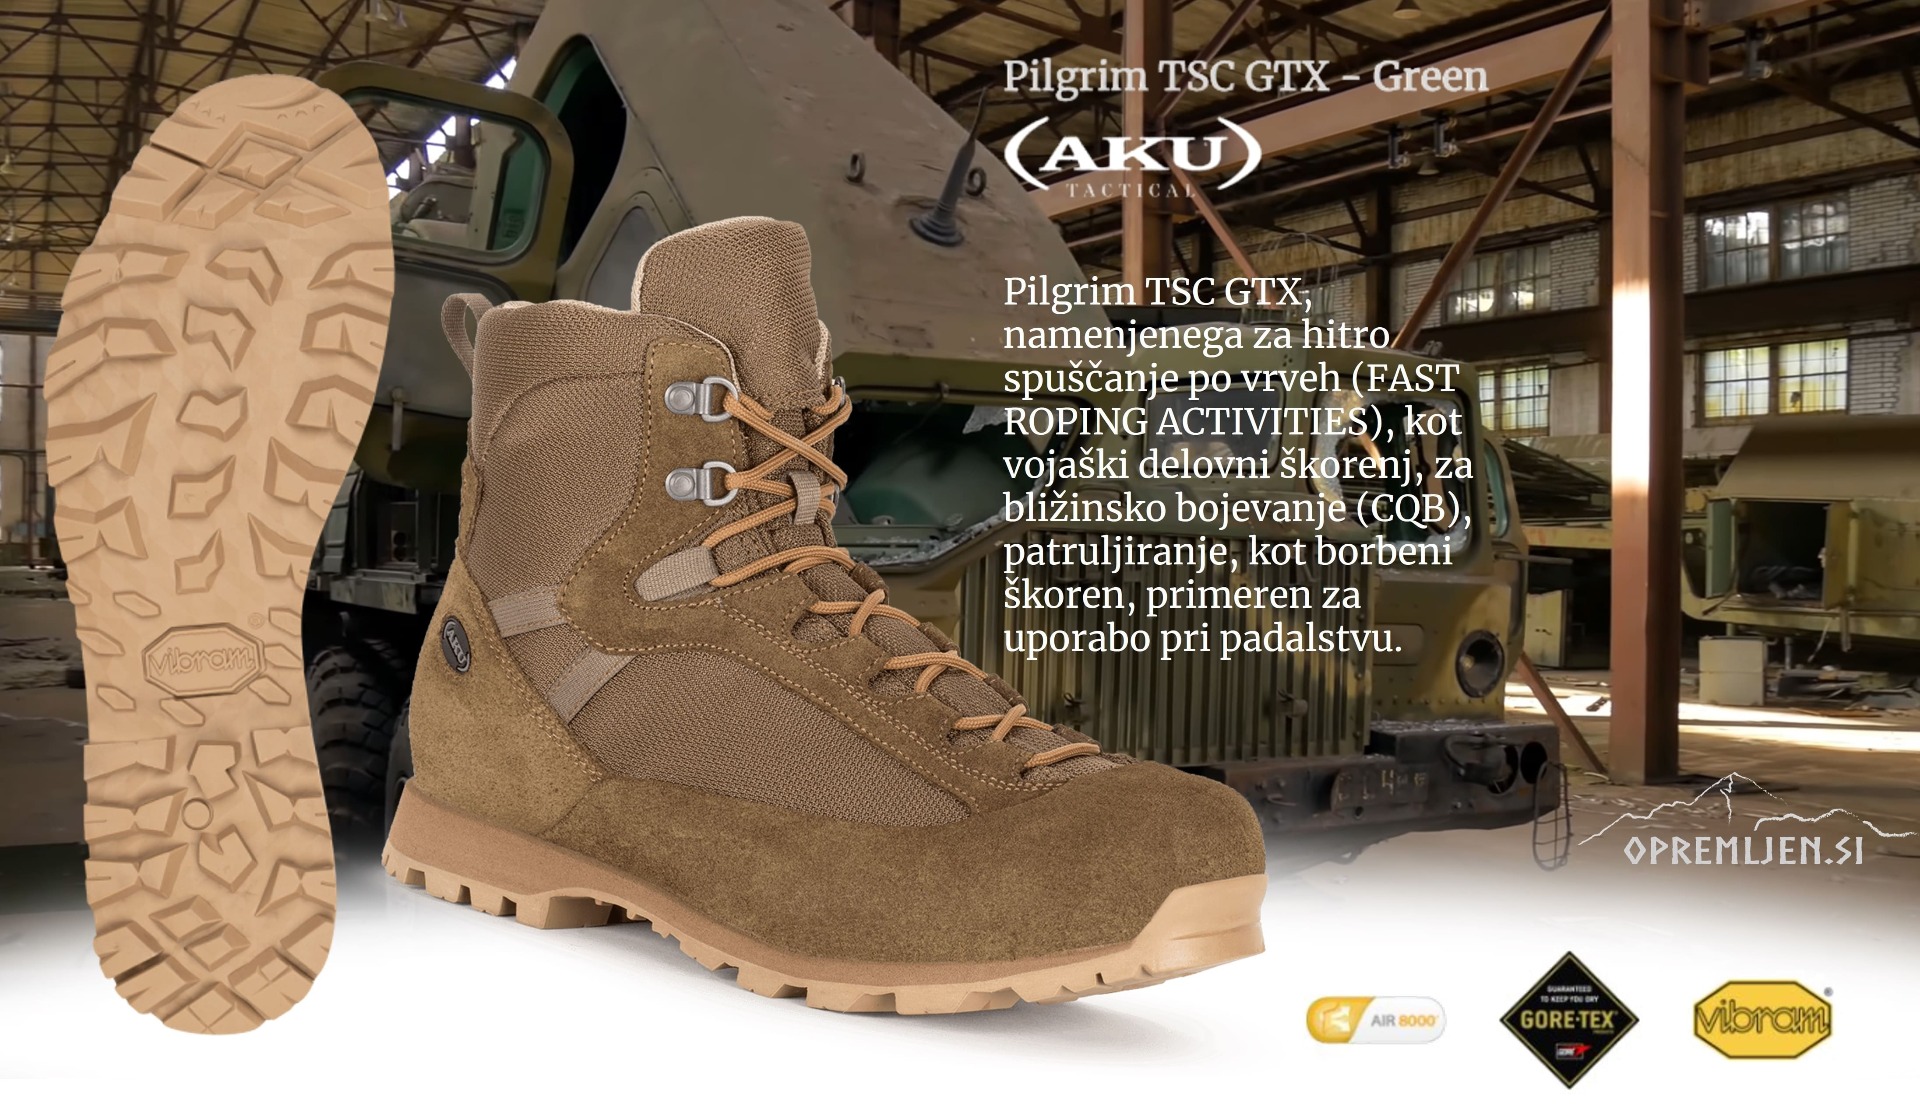 Profesionalna obutev AKU Tactical Pilgrim TSC GTX je idealna za vojaške operacije, specialne enote in terenske aktivnosti. Z visoko zmogljivostjo, udobjem in vzdržljivostjo bo vaše gibanje brezskrbno in varno. Pridobite vrhunsko kakovost in zanesljivost s